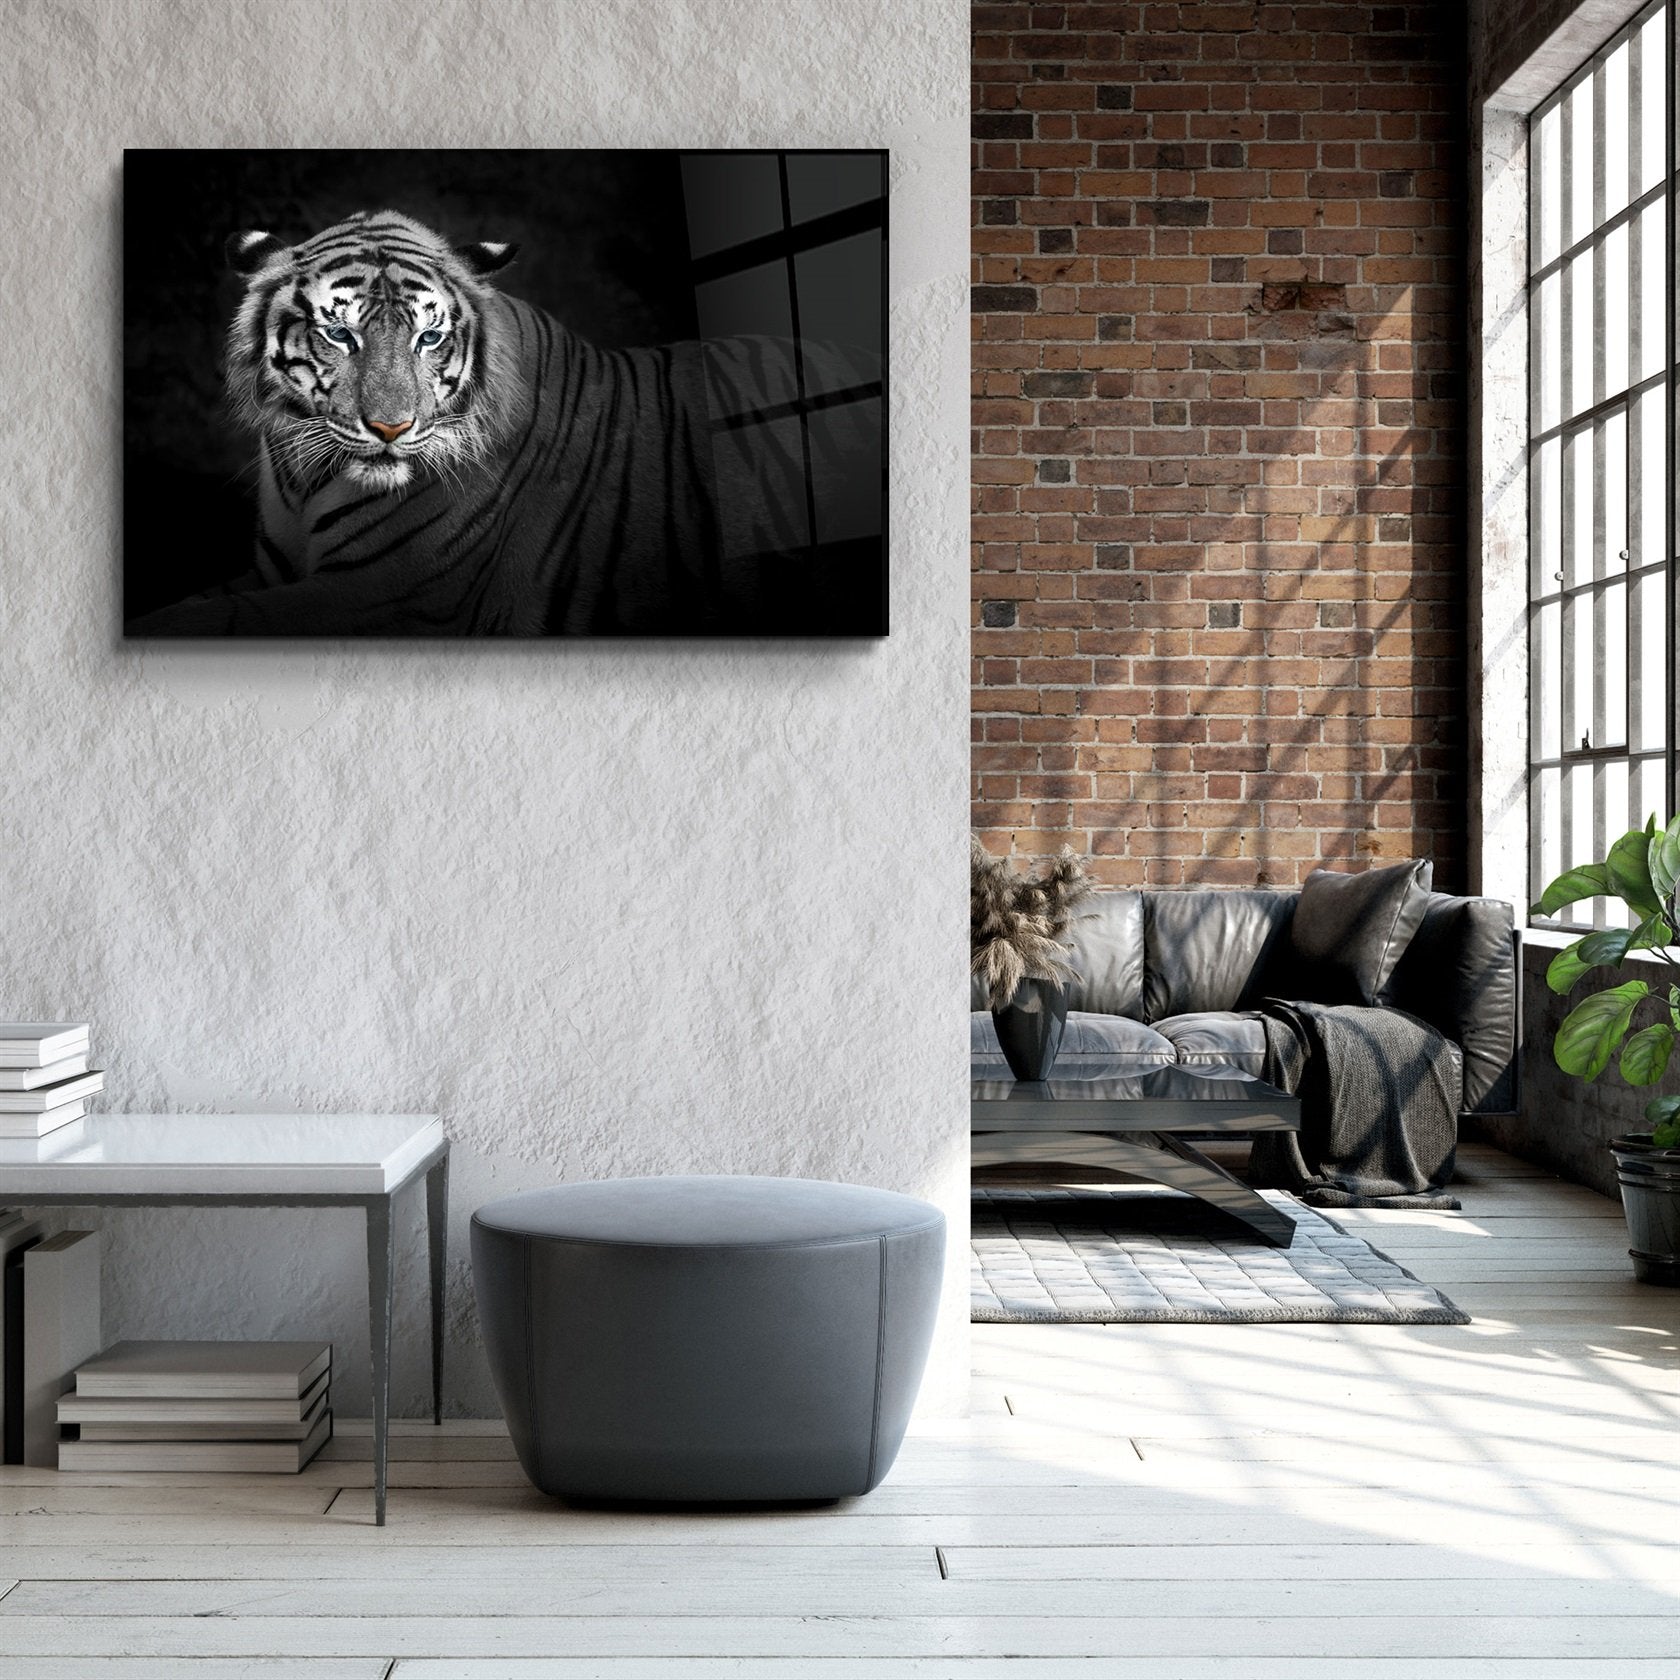 ・"Tiger 4"・Glass Wall Art